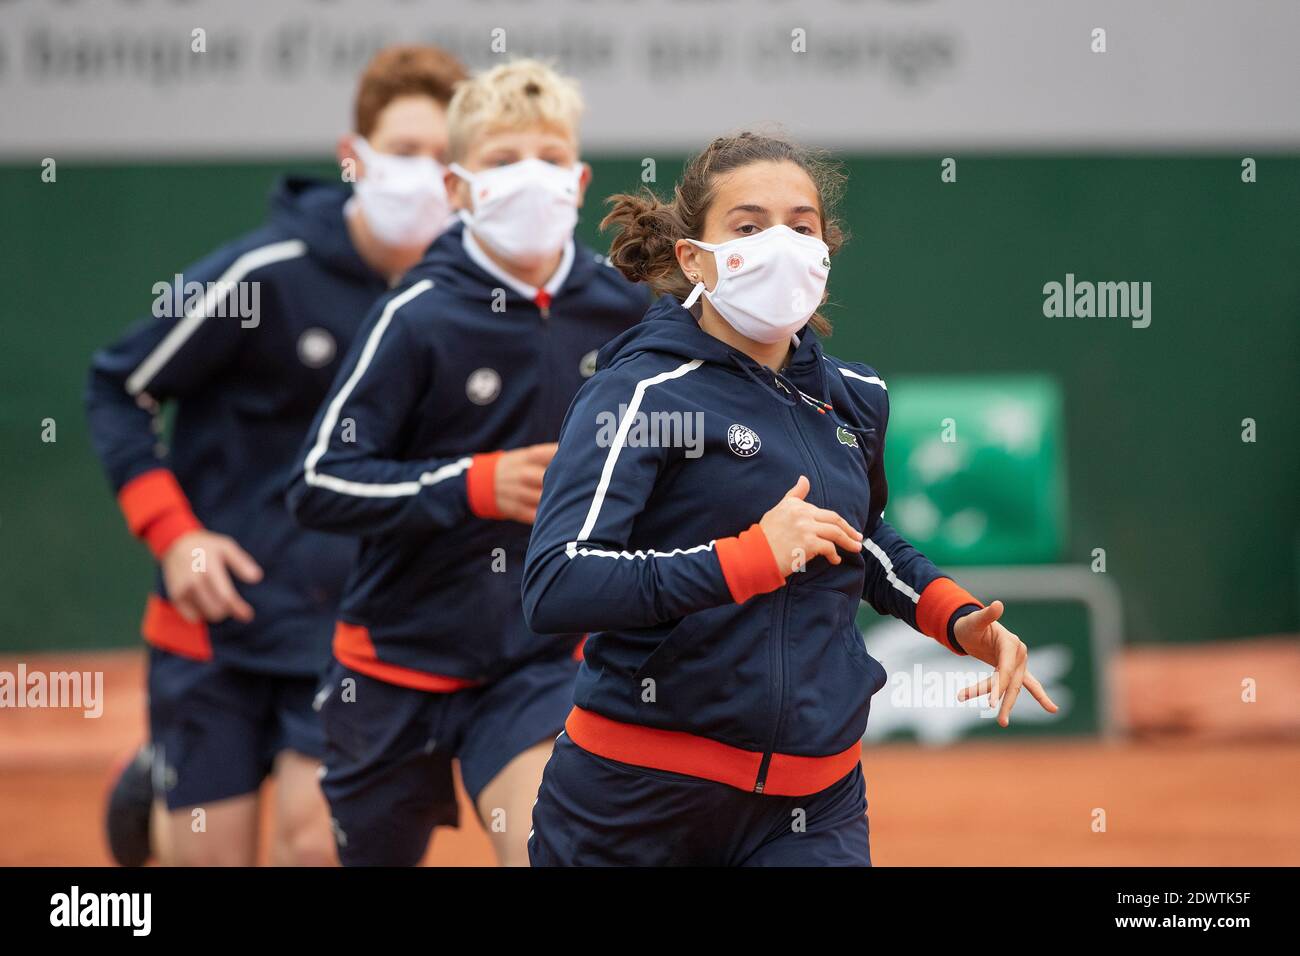 Ballkids mit Corona Maske laufen bei den French Open 2020, Paris, Frankreich, Europa. Stockfoto